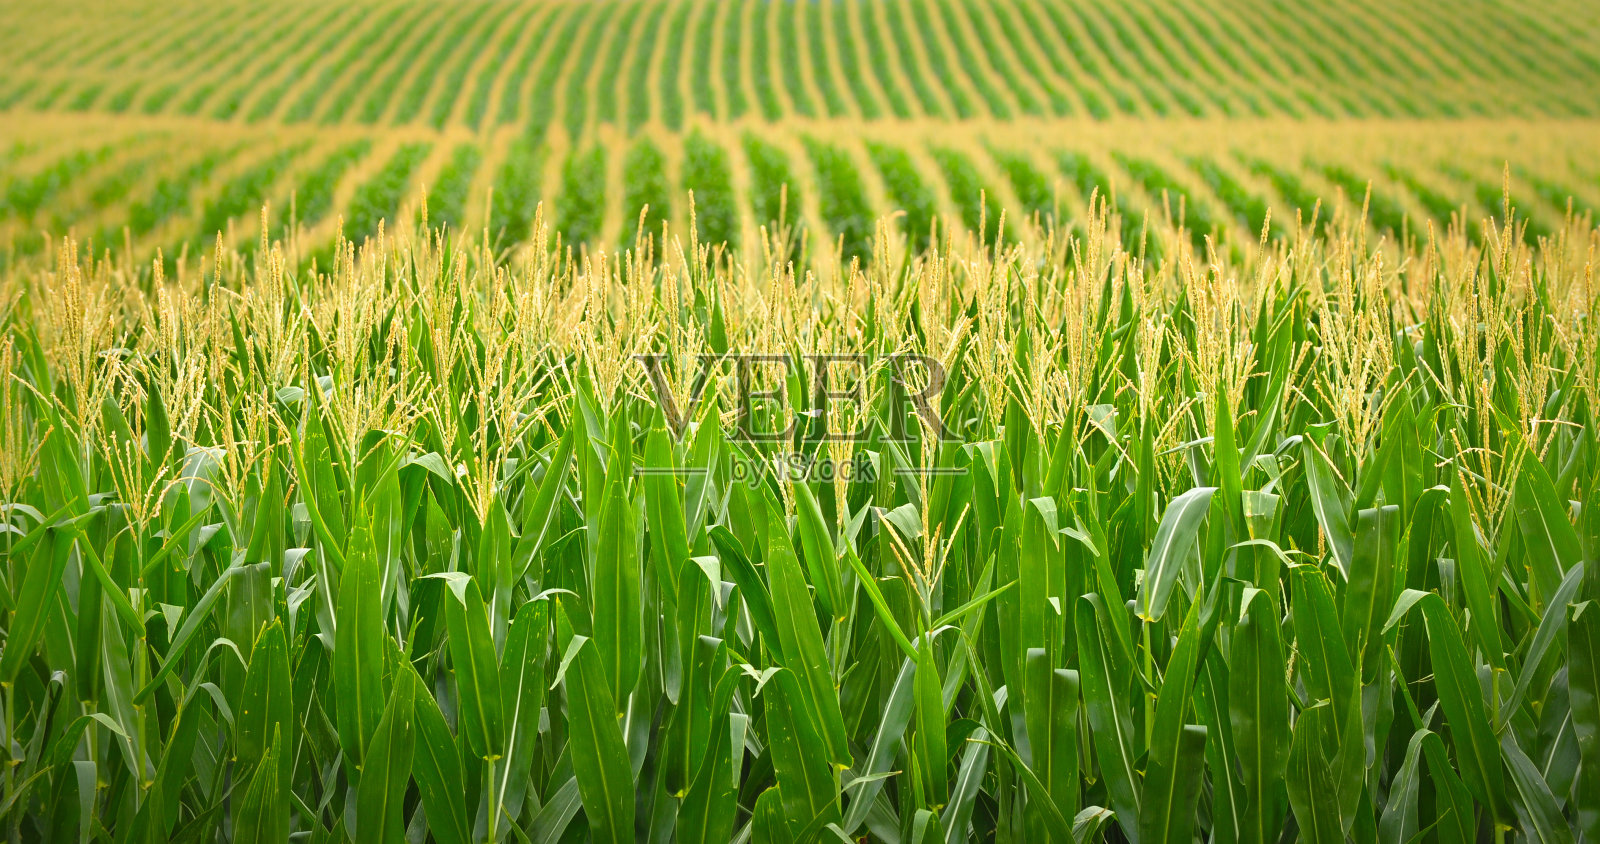 内布拉斯加州的玉米田照片摄影图片